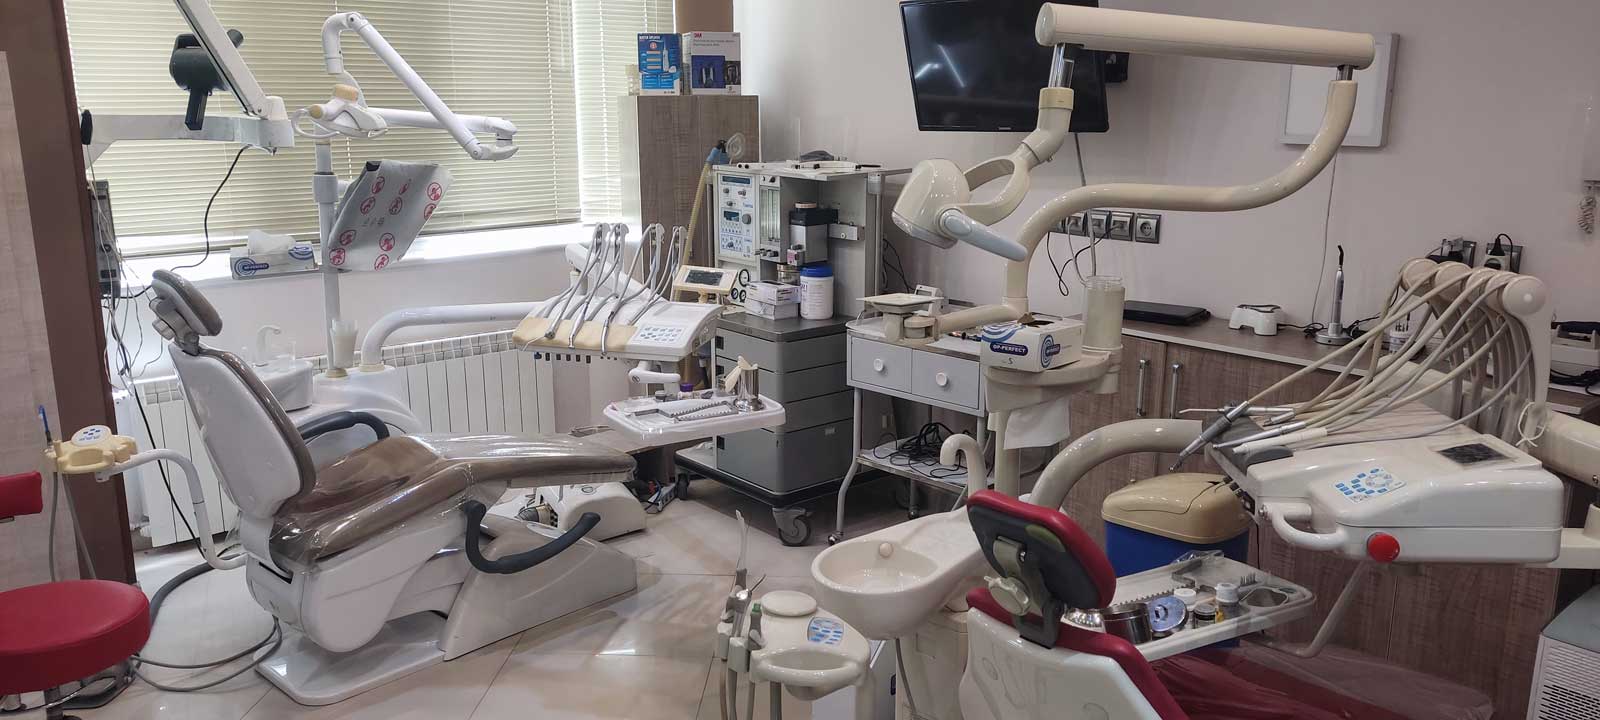 تجهیزات به روز مطب دکتر رضا عمادزاده متخصص دندانپزشکی زیبایی در احمد آباد مشهد